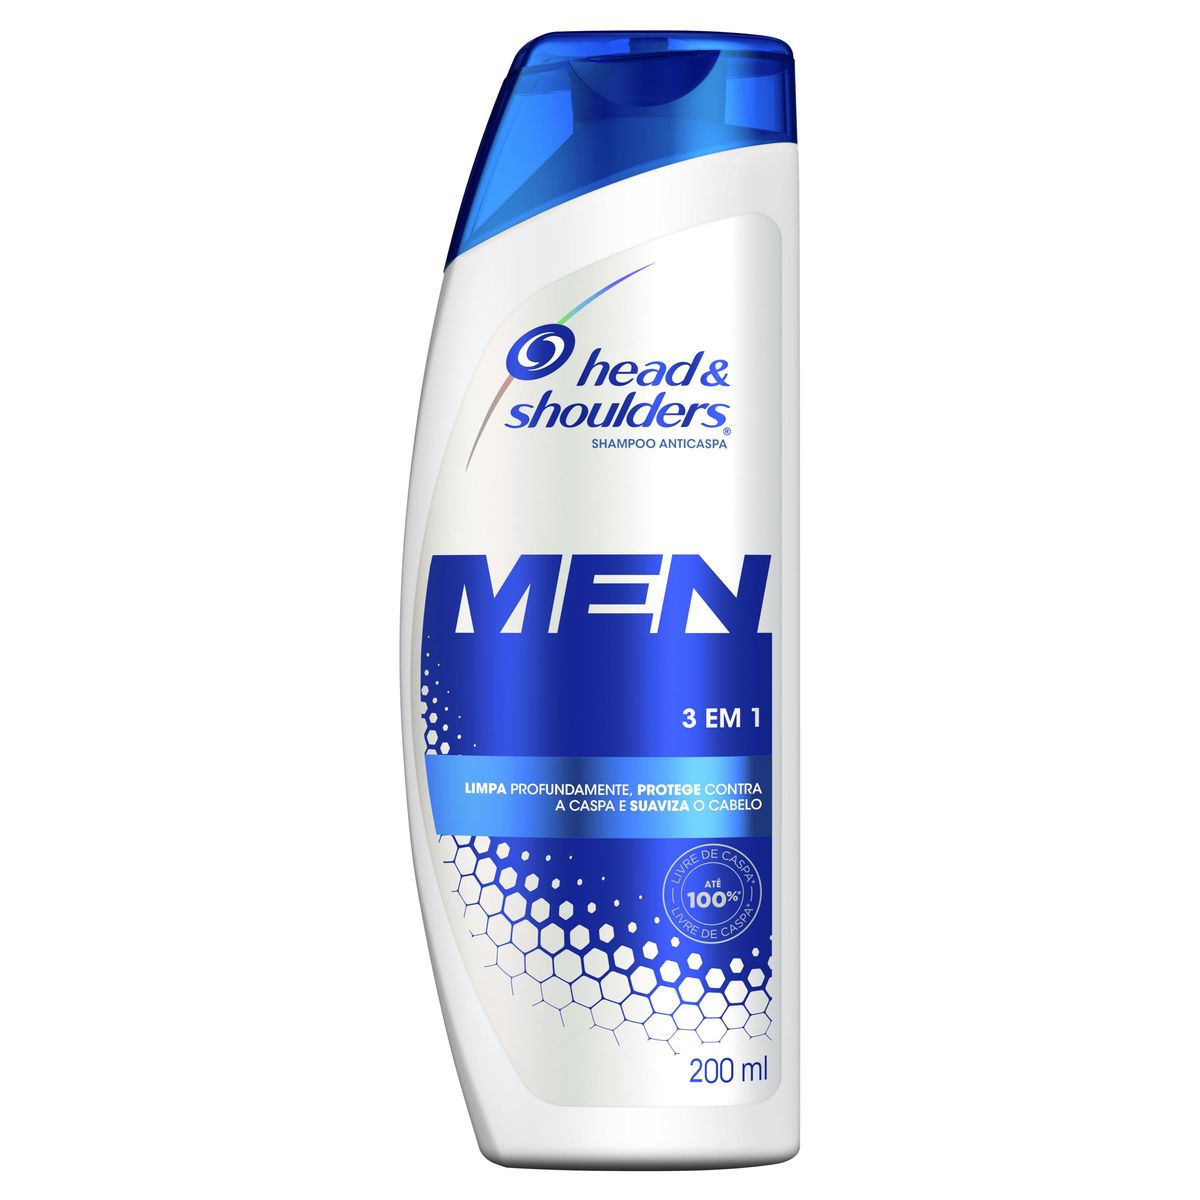 Shampoo de Cuidados com a Raiz Head & Shoulders Men 3em1 200ml